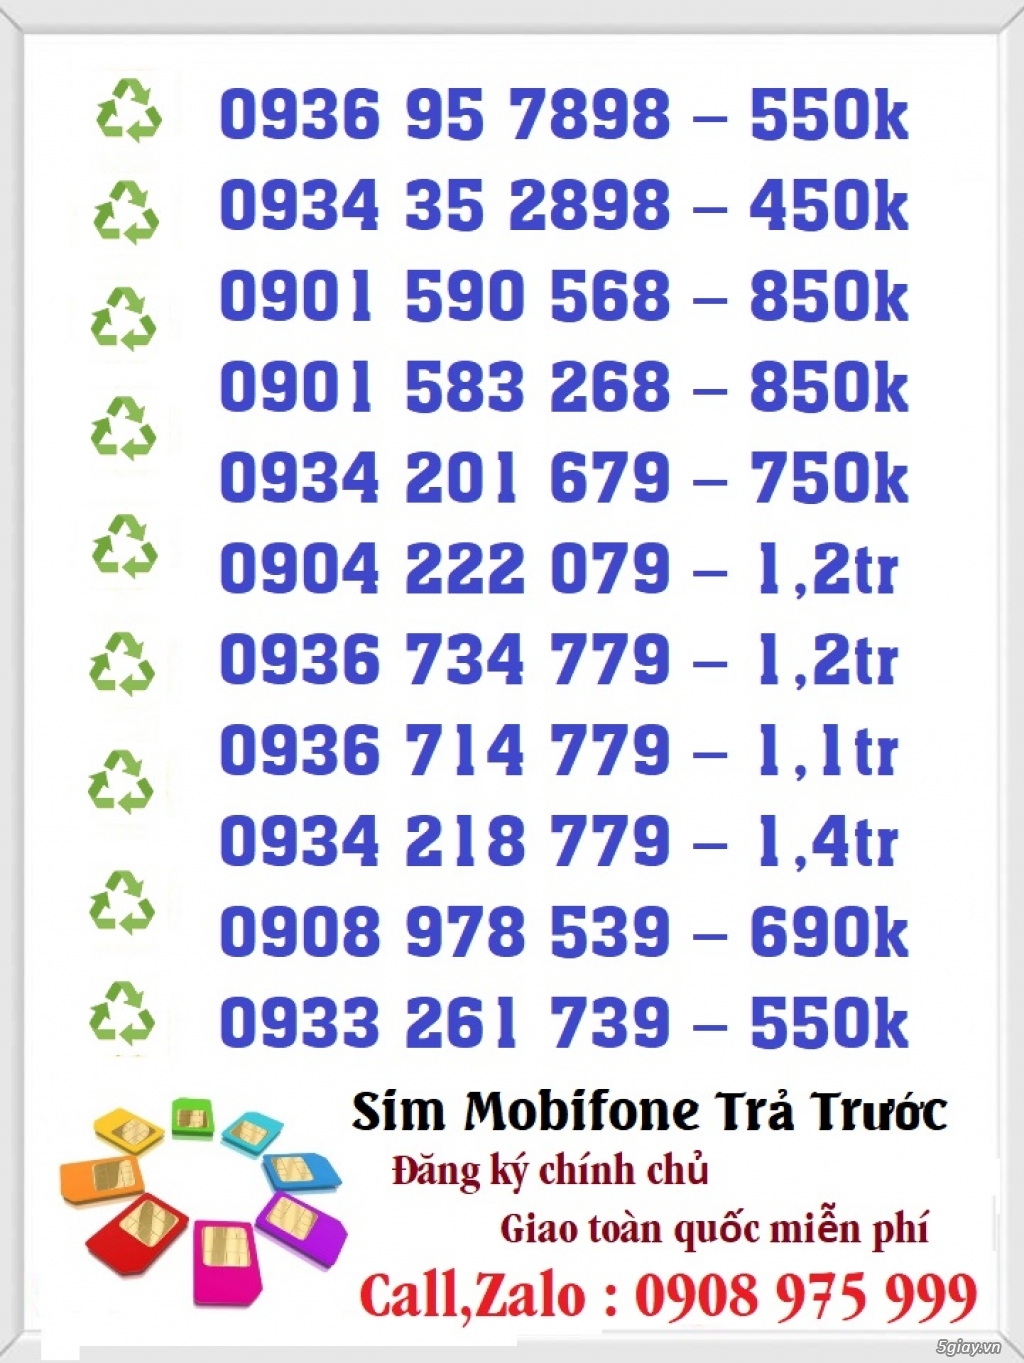 Sim Số Đẹp Giá Rẻ Đầu 09 - Mobifone Trả Trước - 7